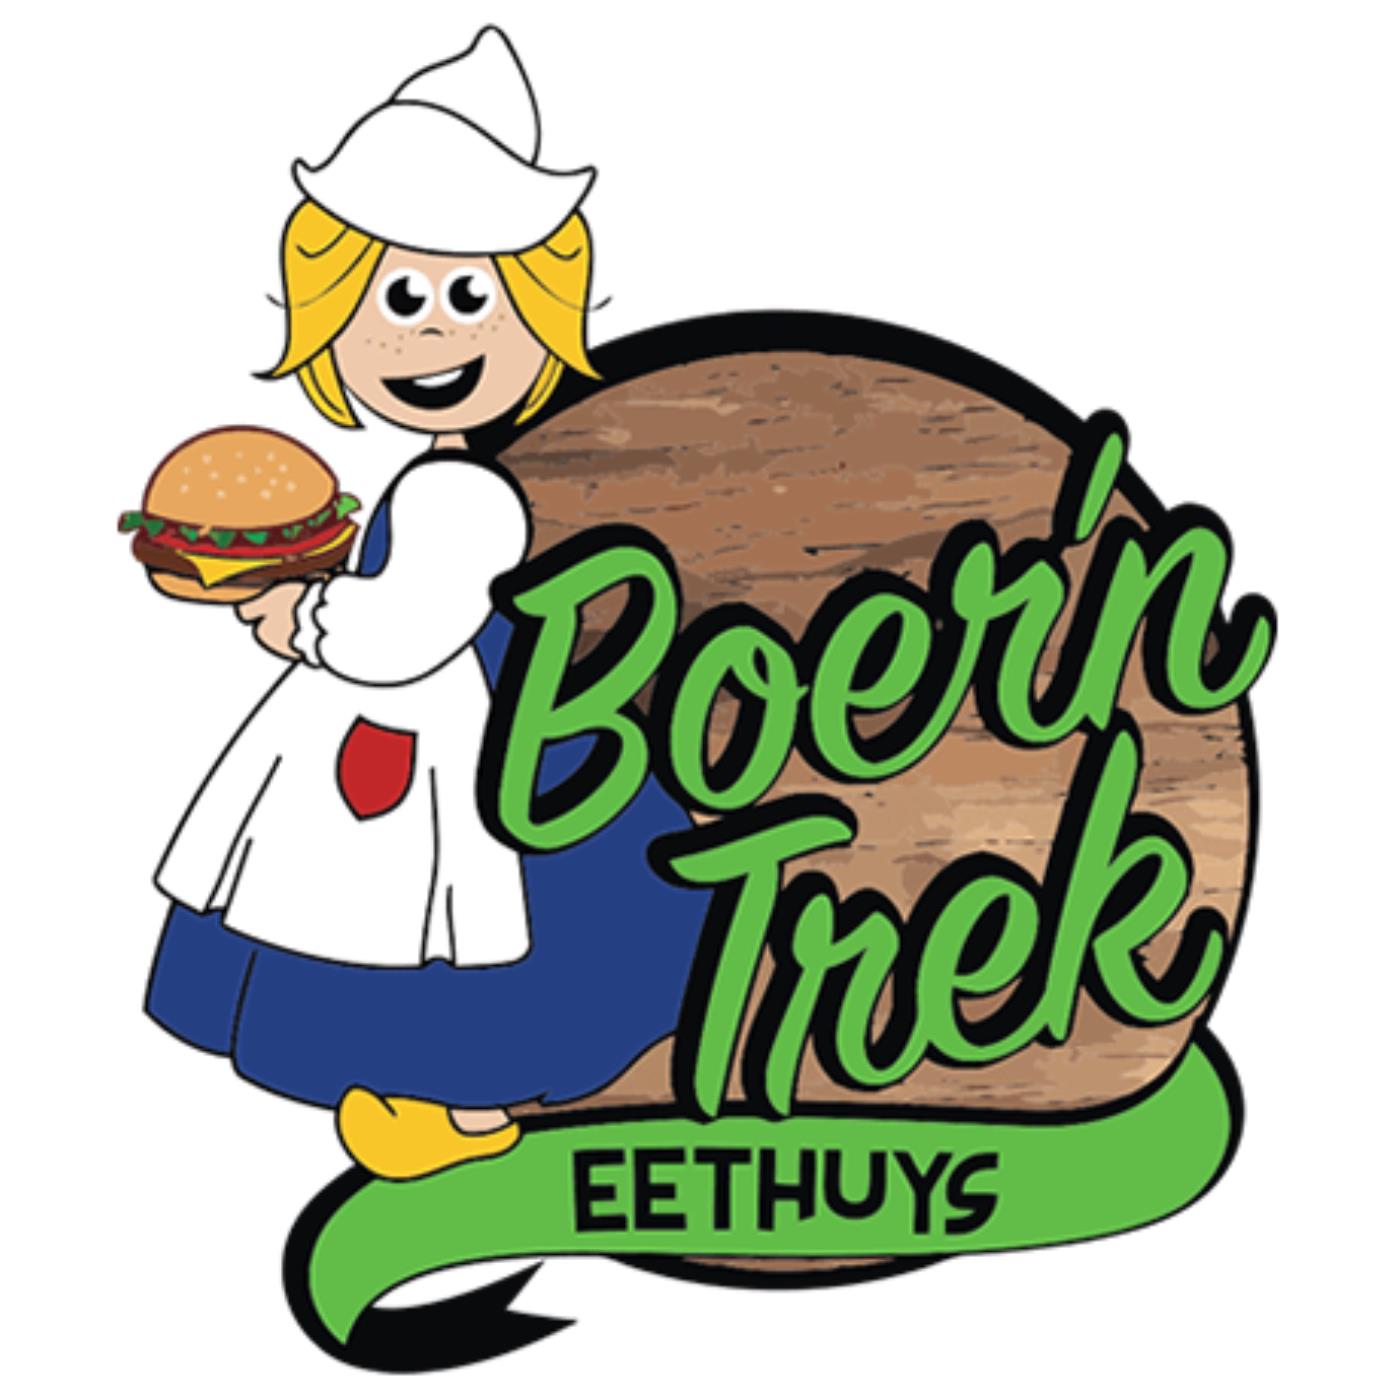 Logo Eethuys Boer'n trek